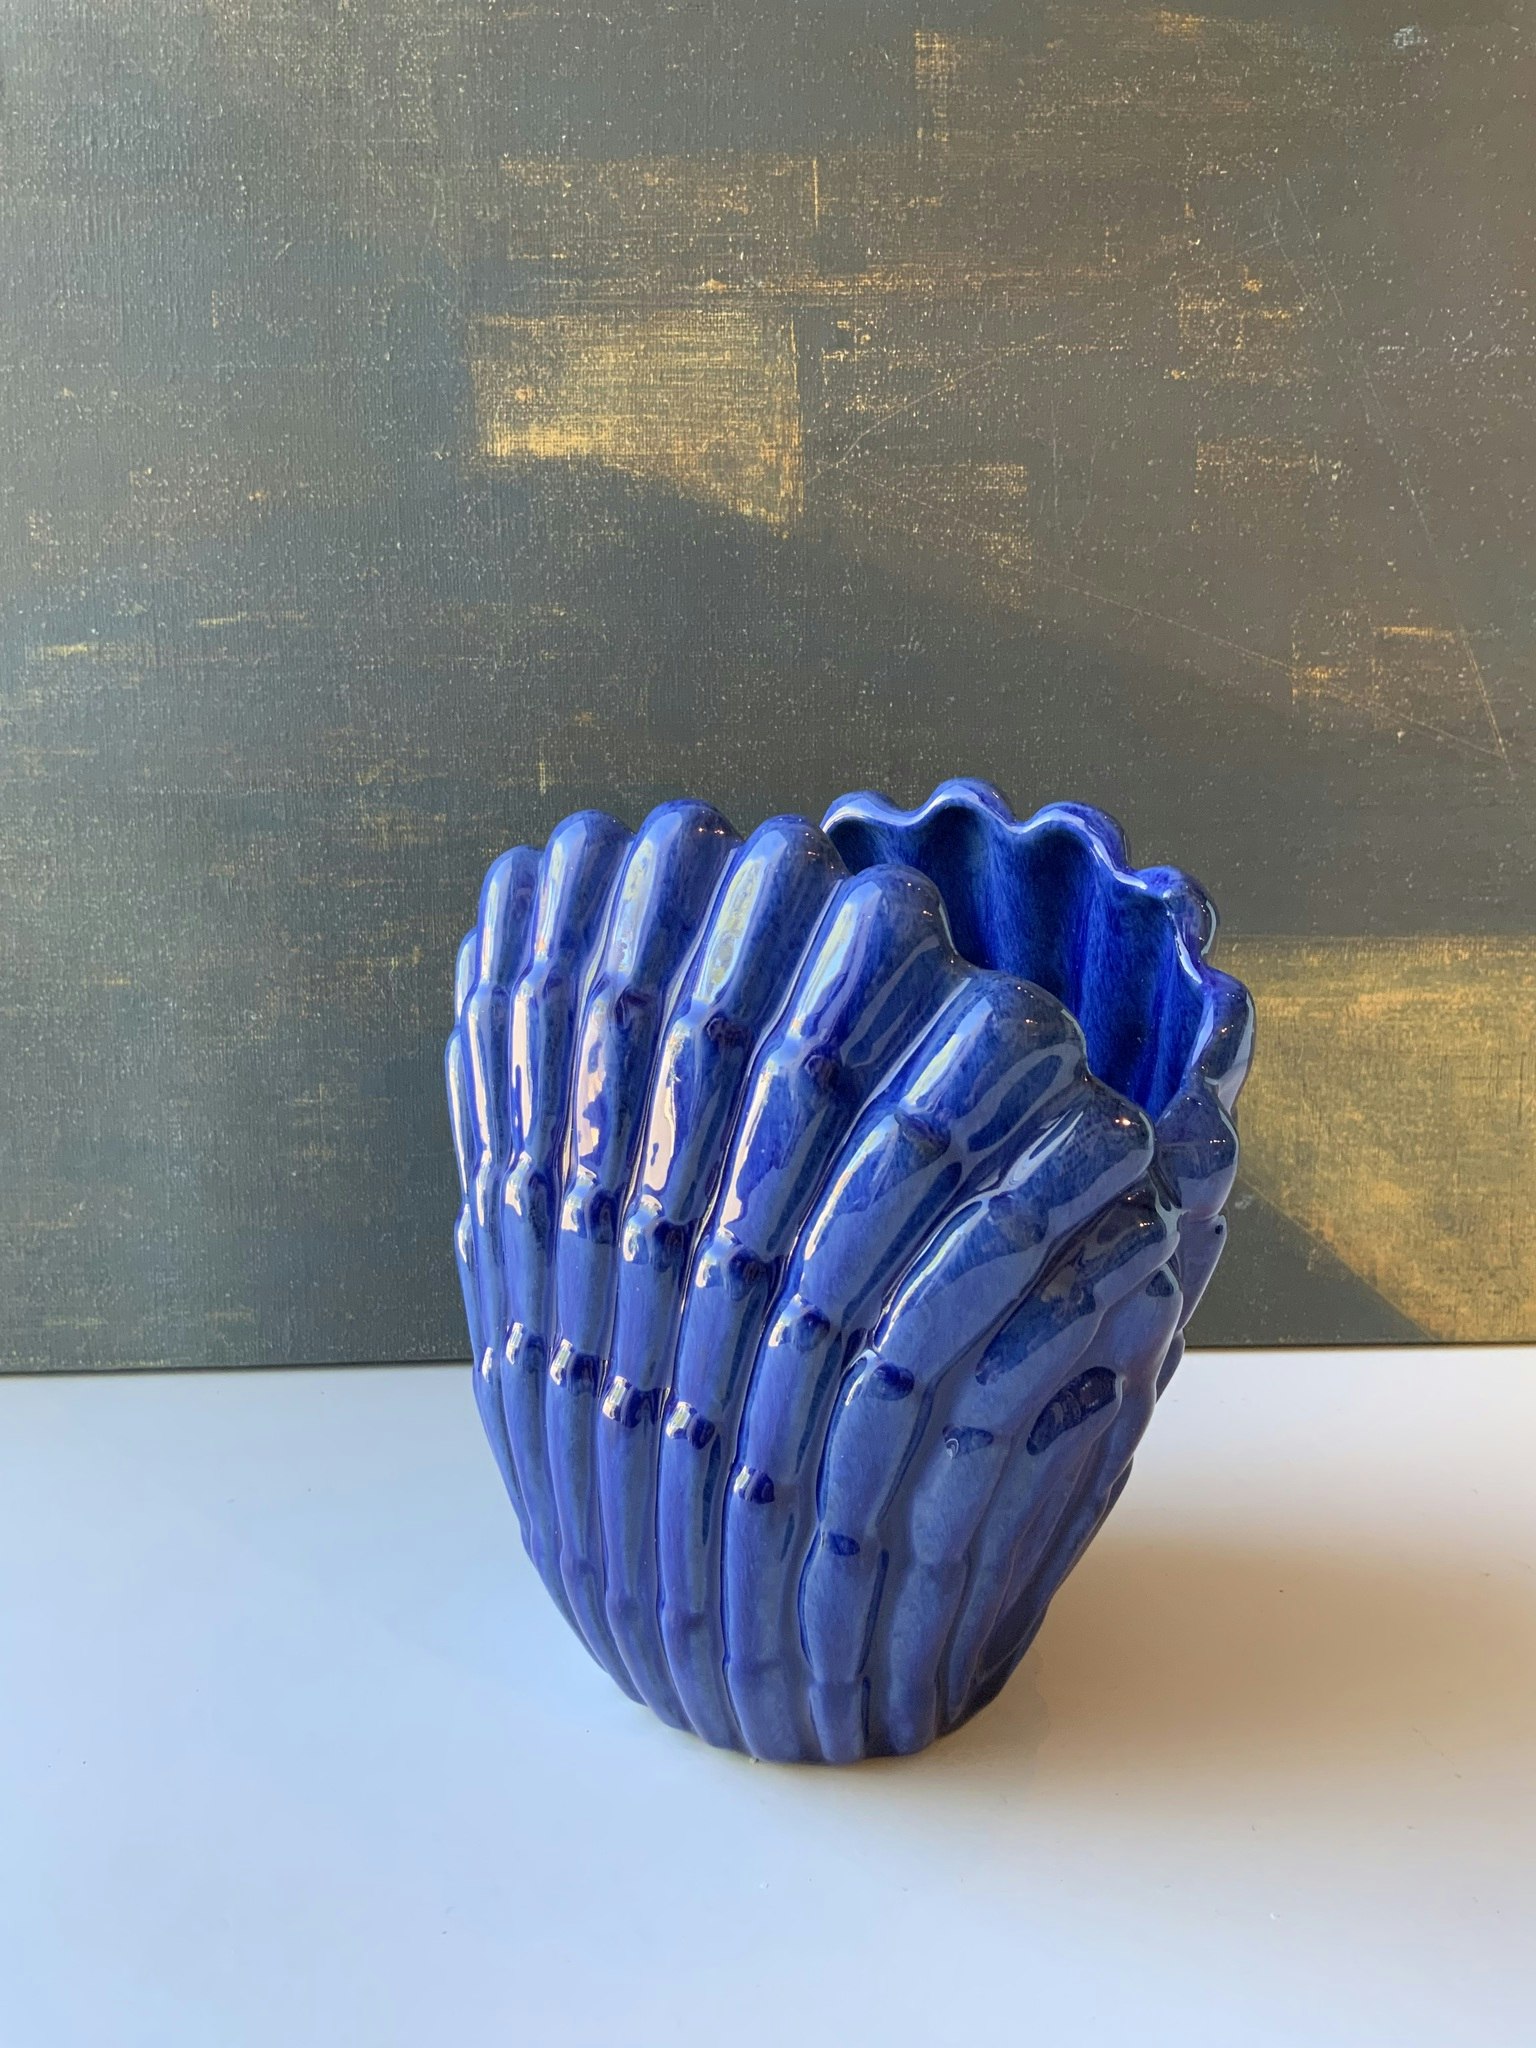 Blue shell vase 342